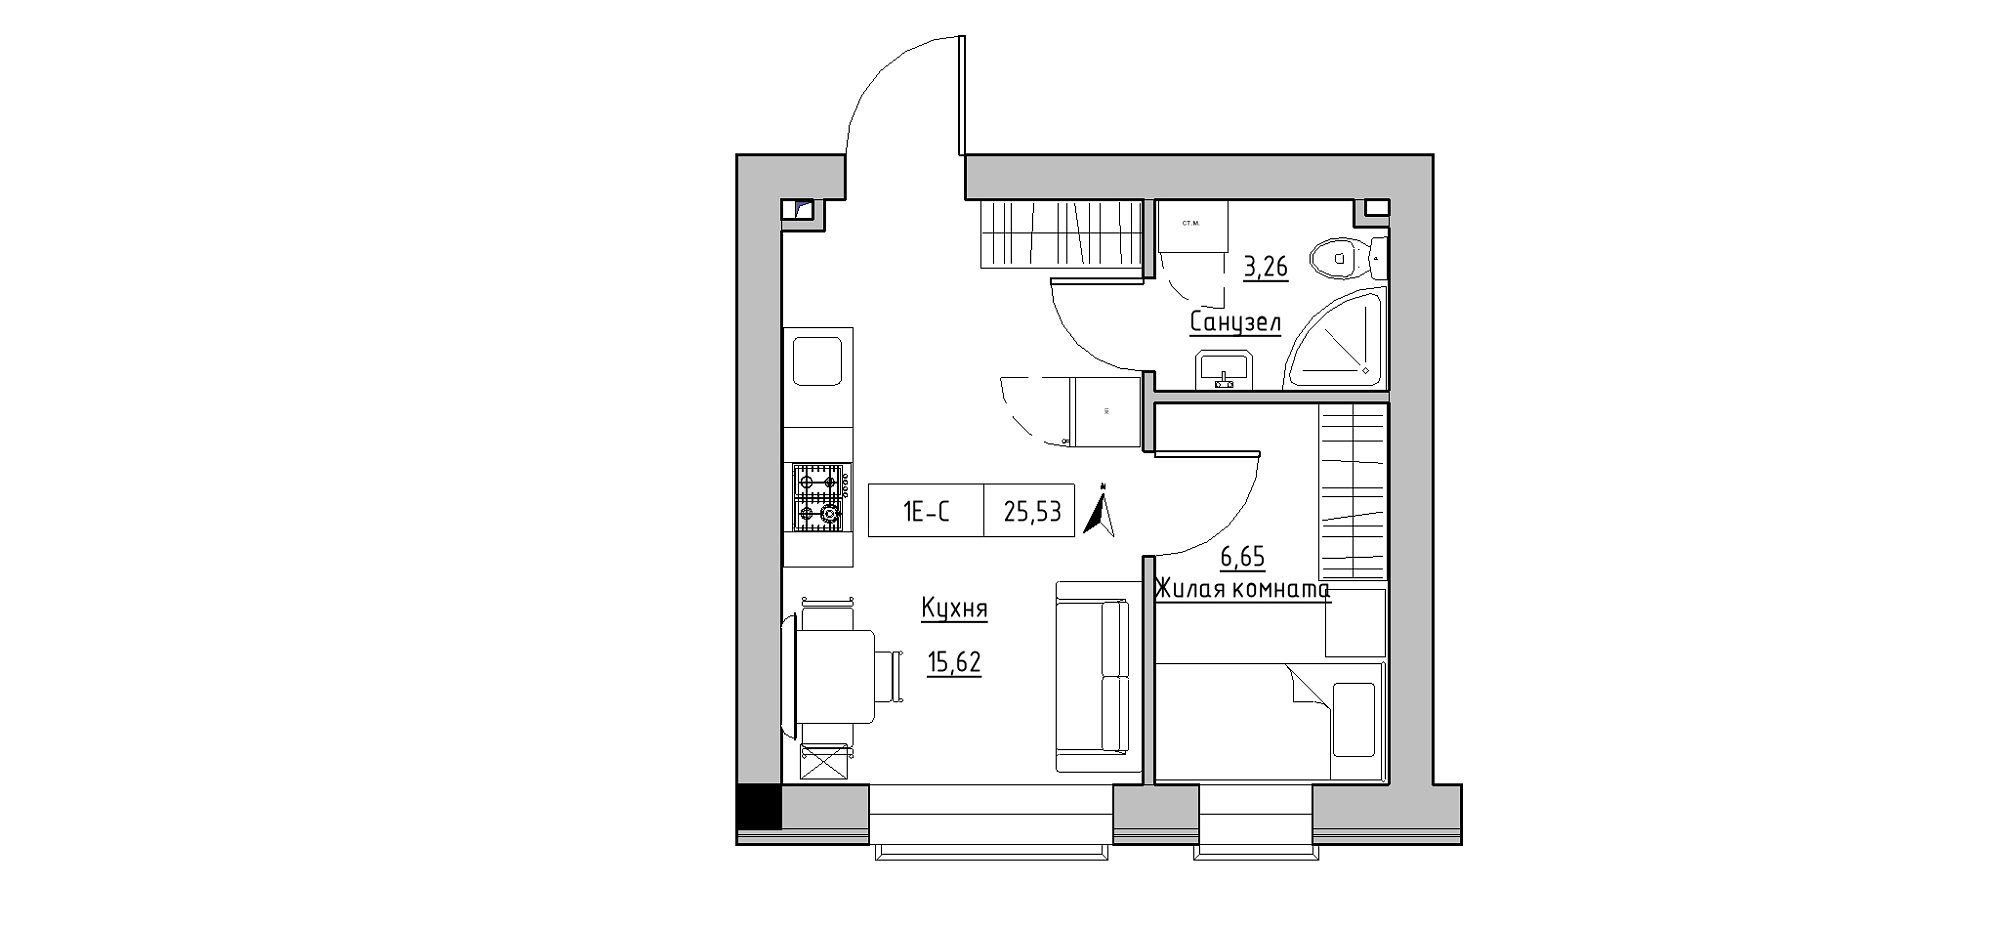 Планування 1-к квартира площею 25.53м2, KS-020-04/0004.